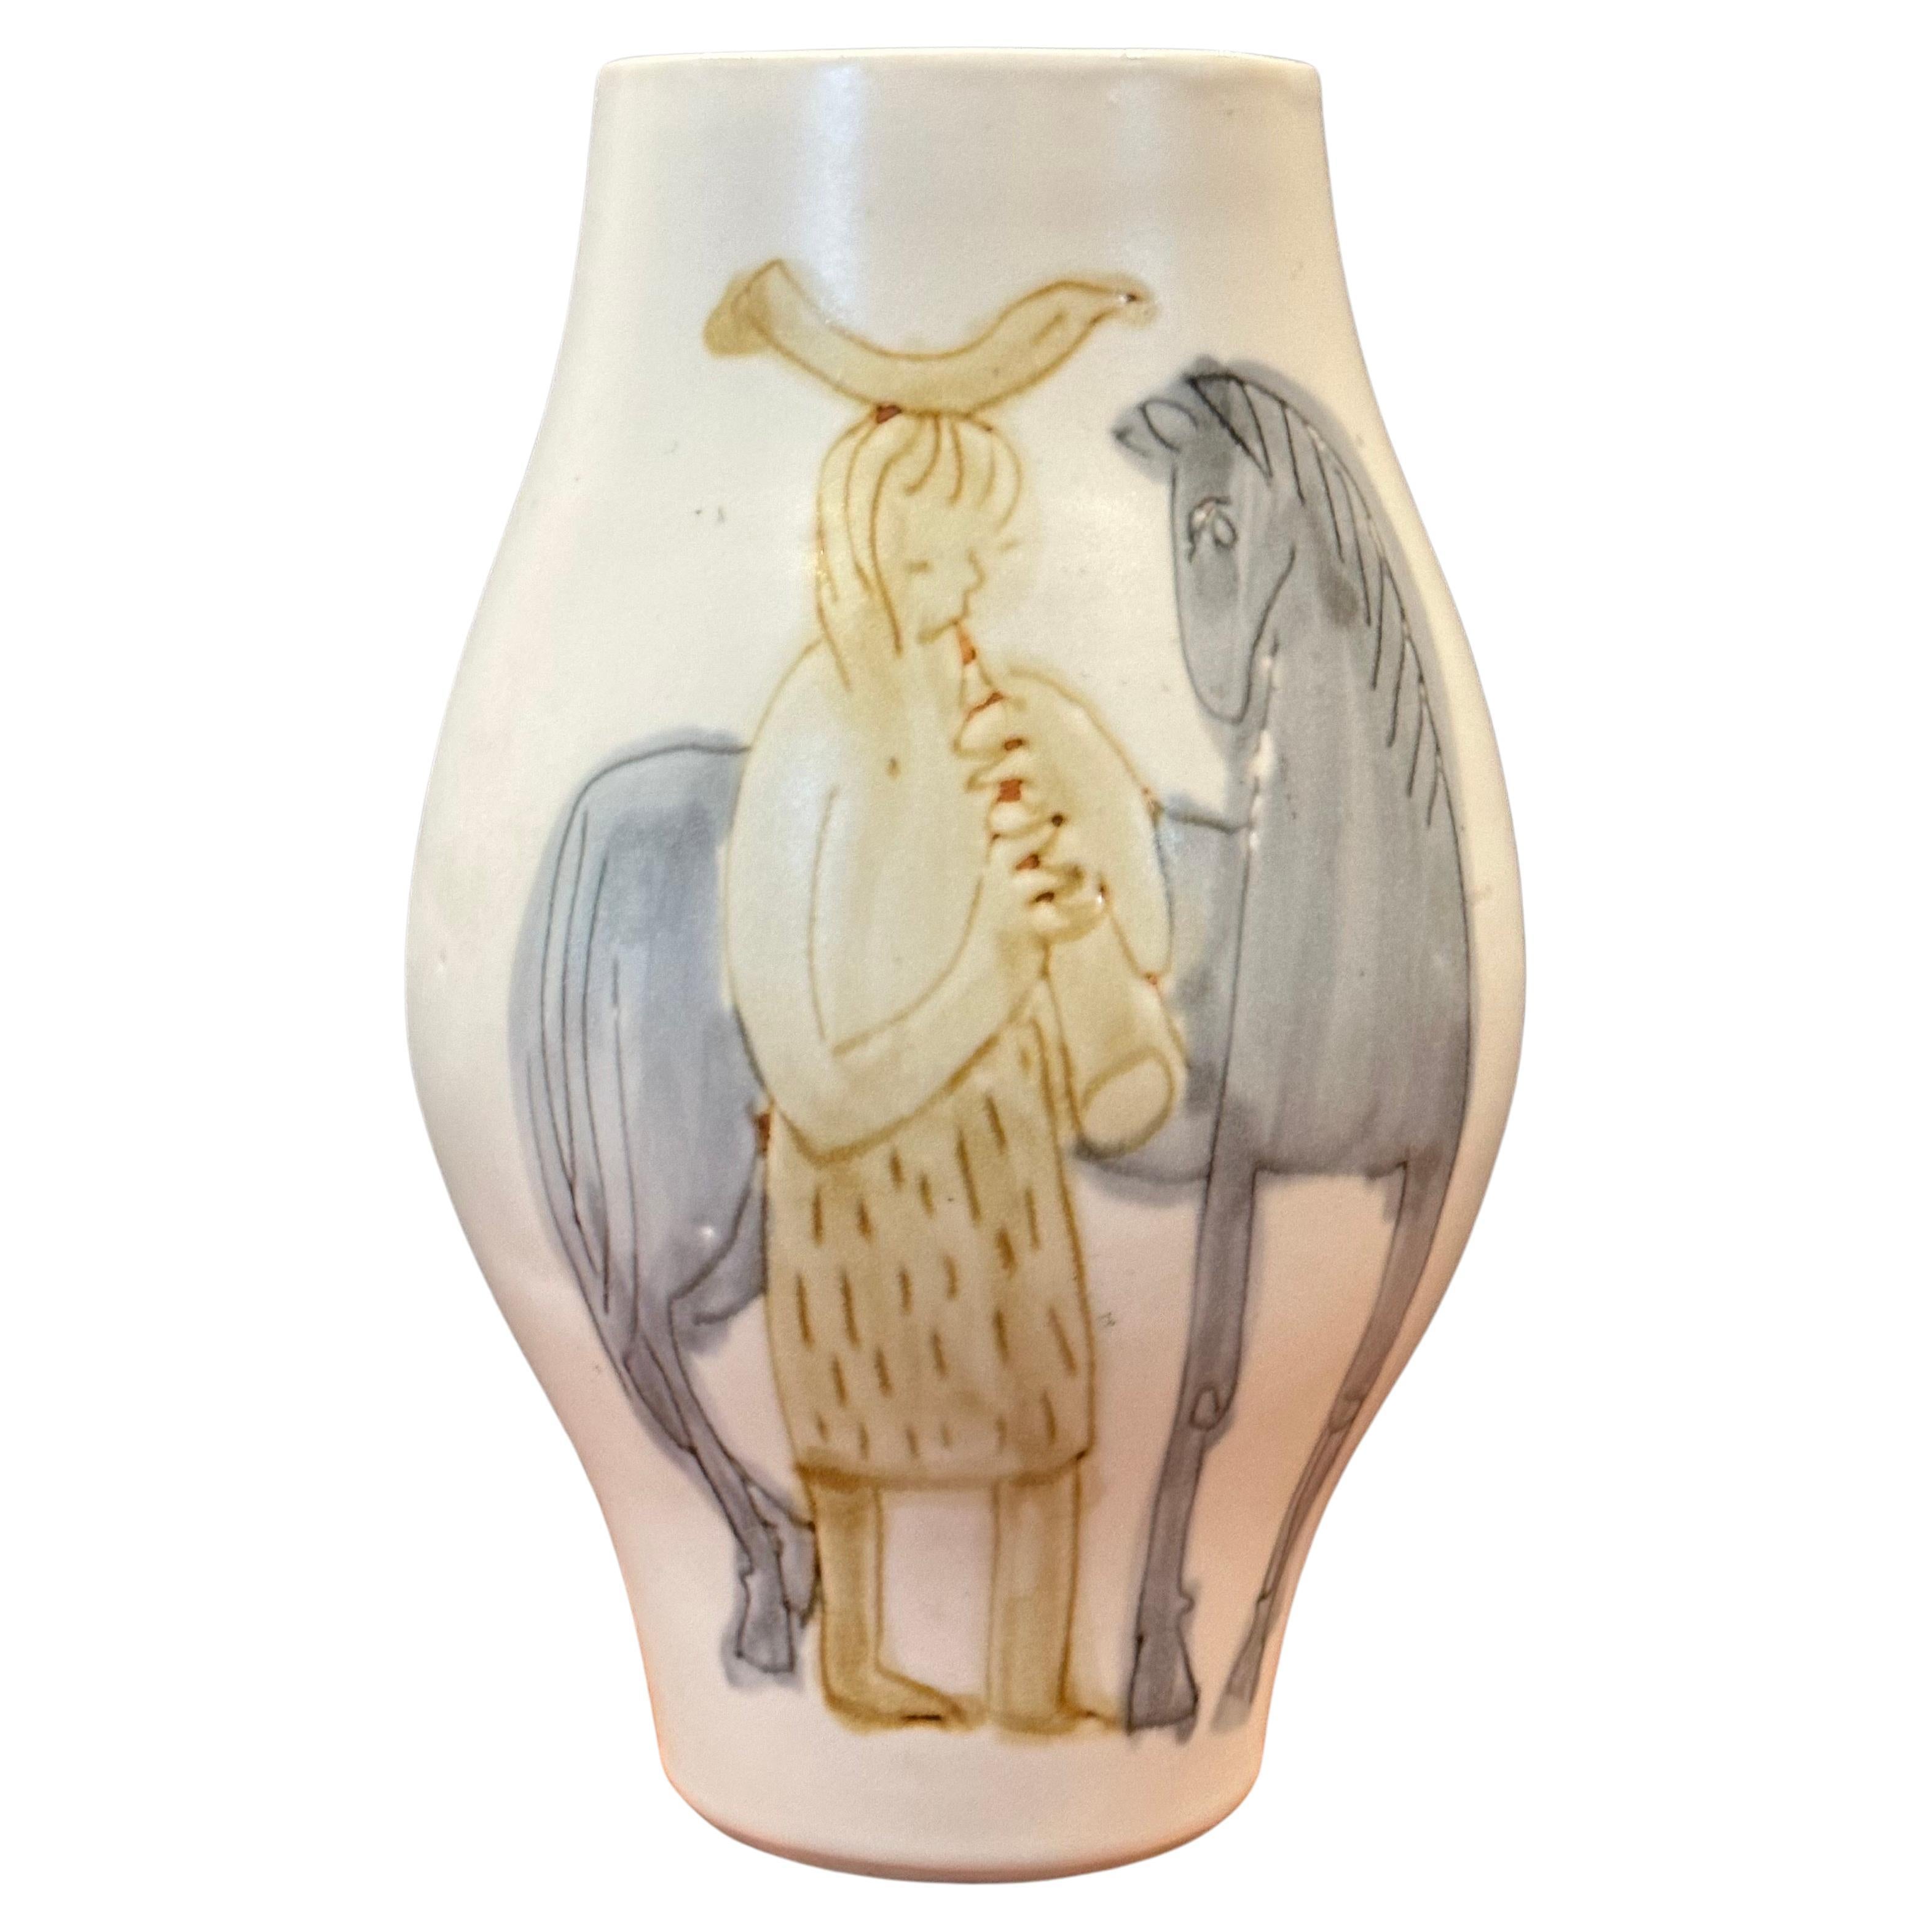 Vase en céramique peint à la main avec une peinture de cheval à la Picasso, circa 1970. Cette pièce est en bon état et mesure environ 7 